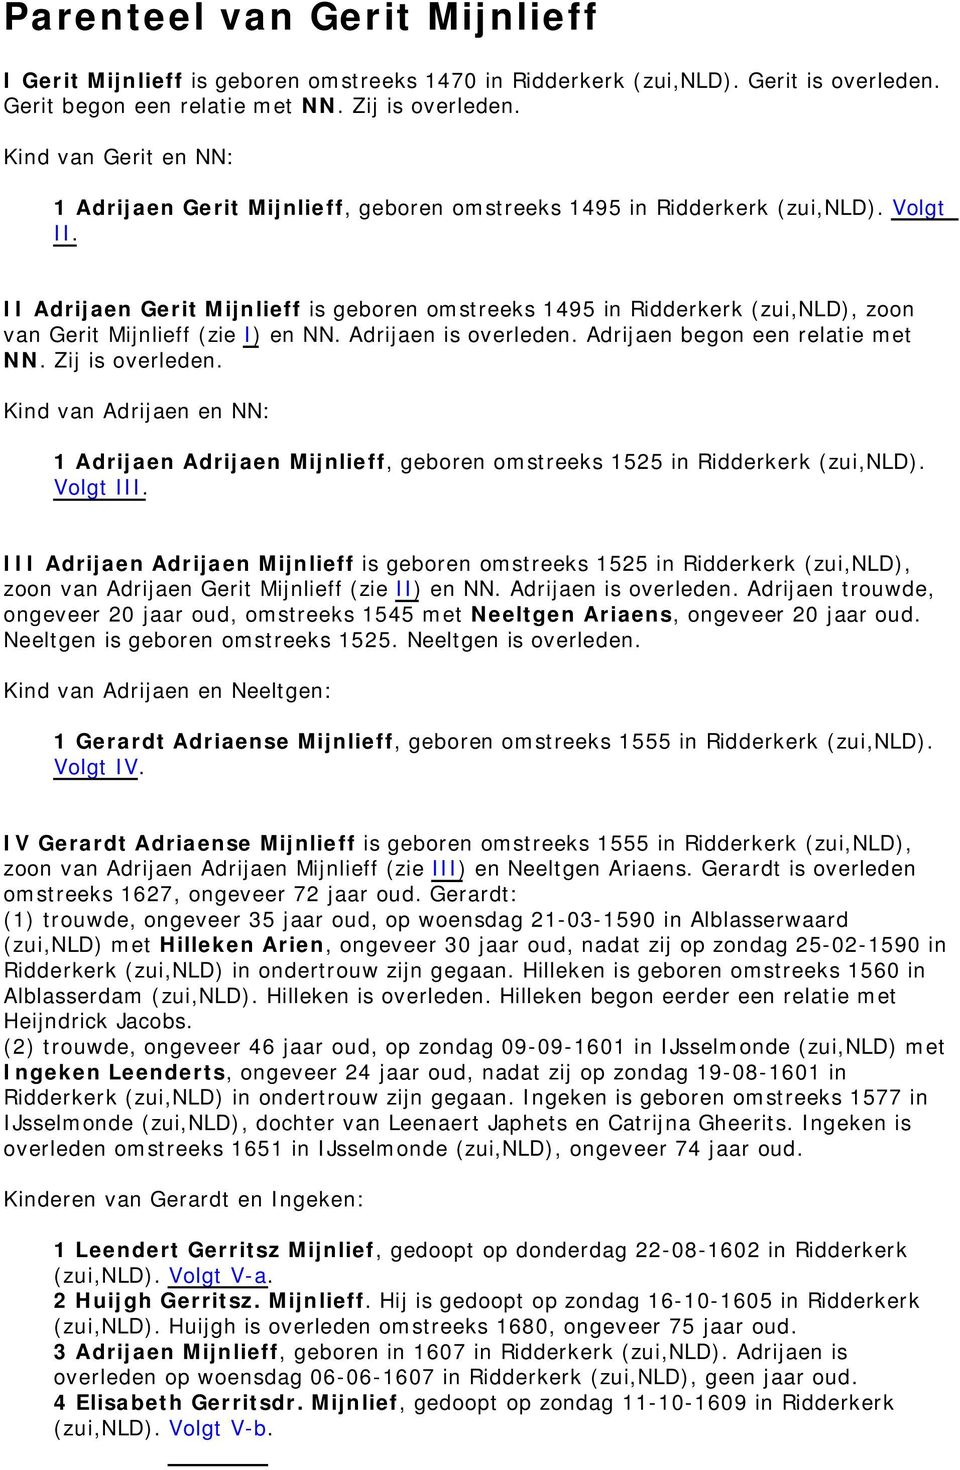 II Adrijaen Gerit Mijnlieff is geboren omstreeks 1495 in Ridderkerk (zui,nld), zoon van Gerit Mijnlieff (zie I) en NN. Adrijaen is overleden. Adrijaen begon een relatie met NN. Zij is overleden.